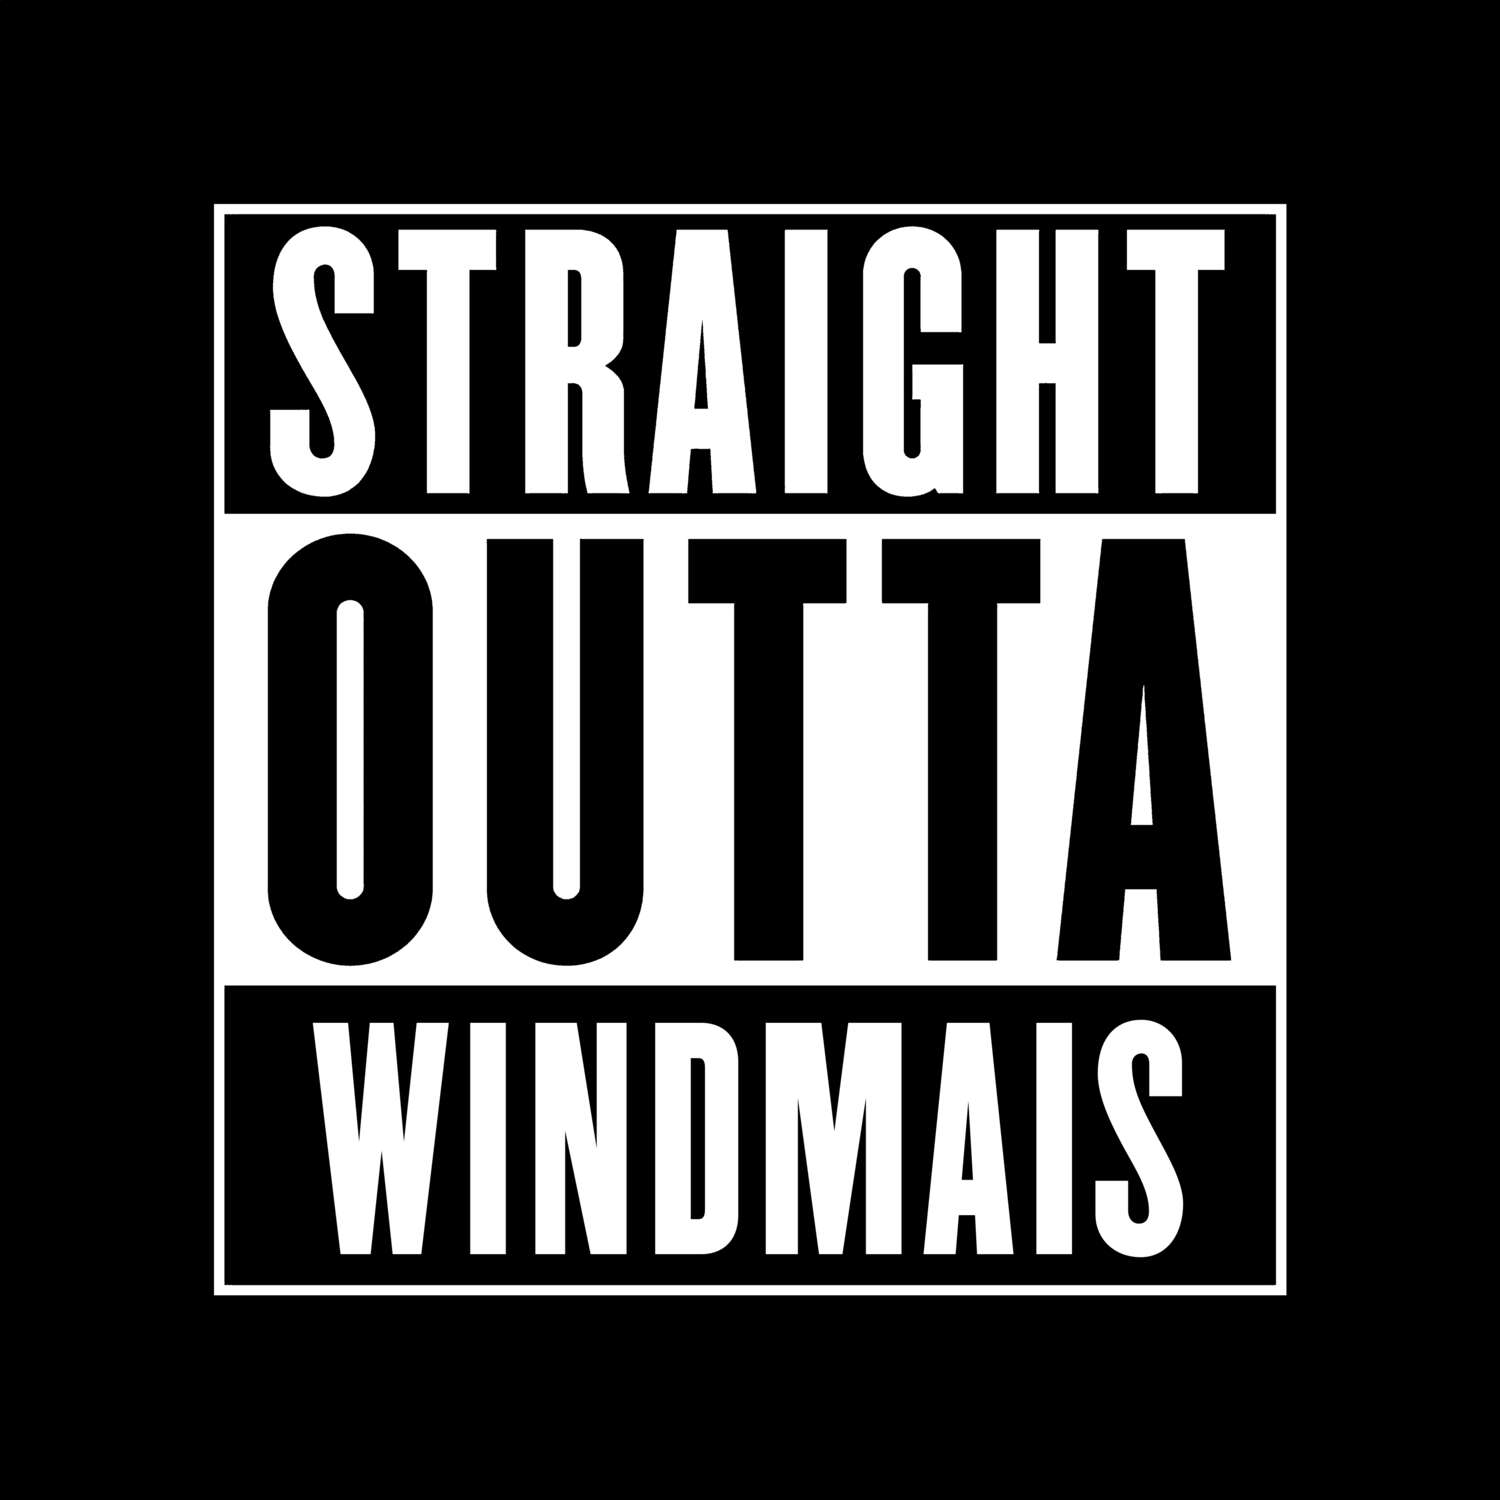 Windmais T-Shirt »Straight Outta«